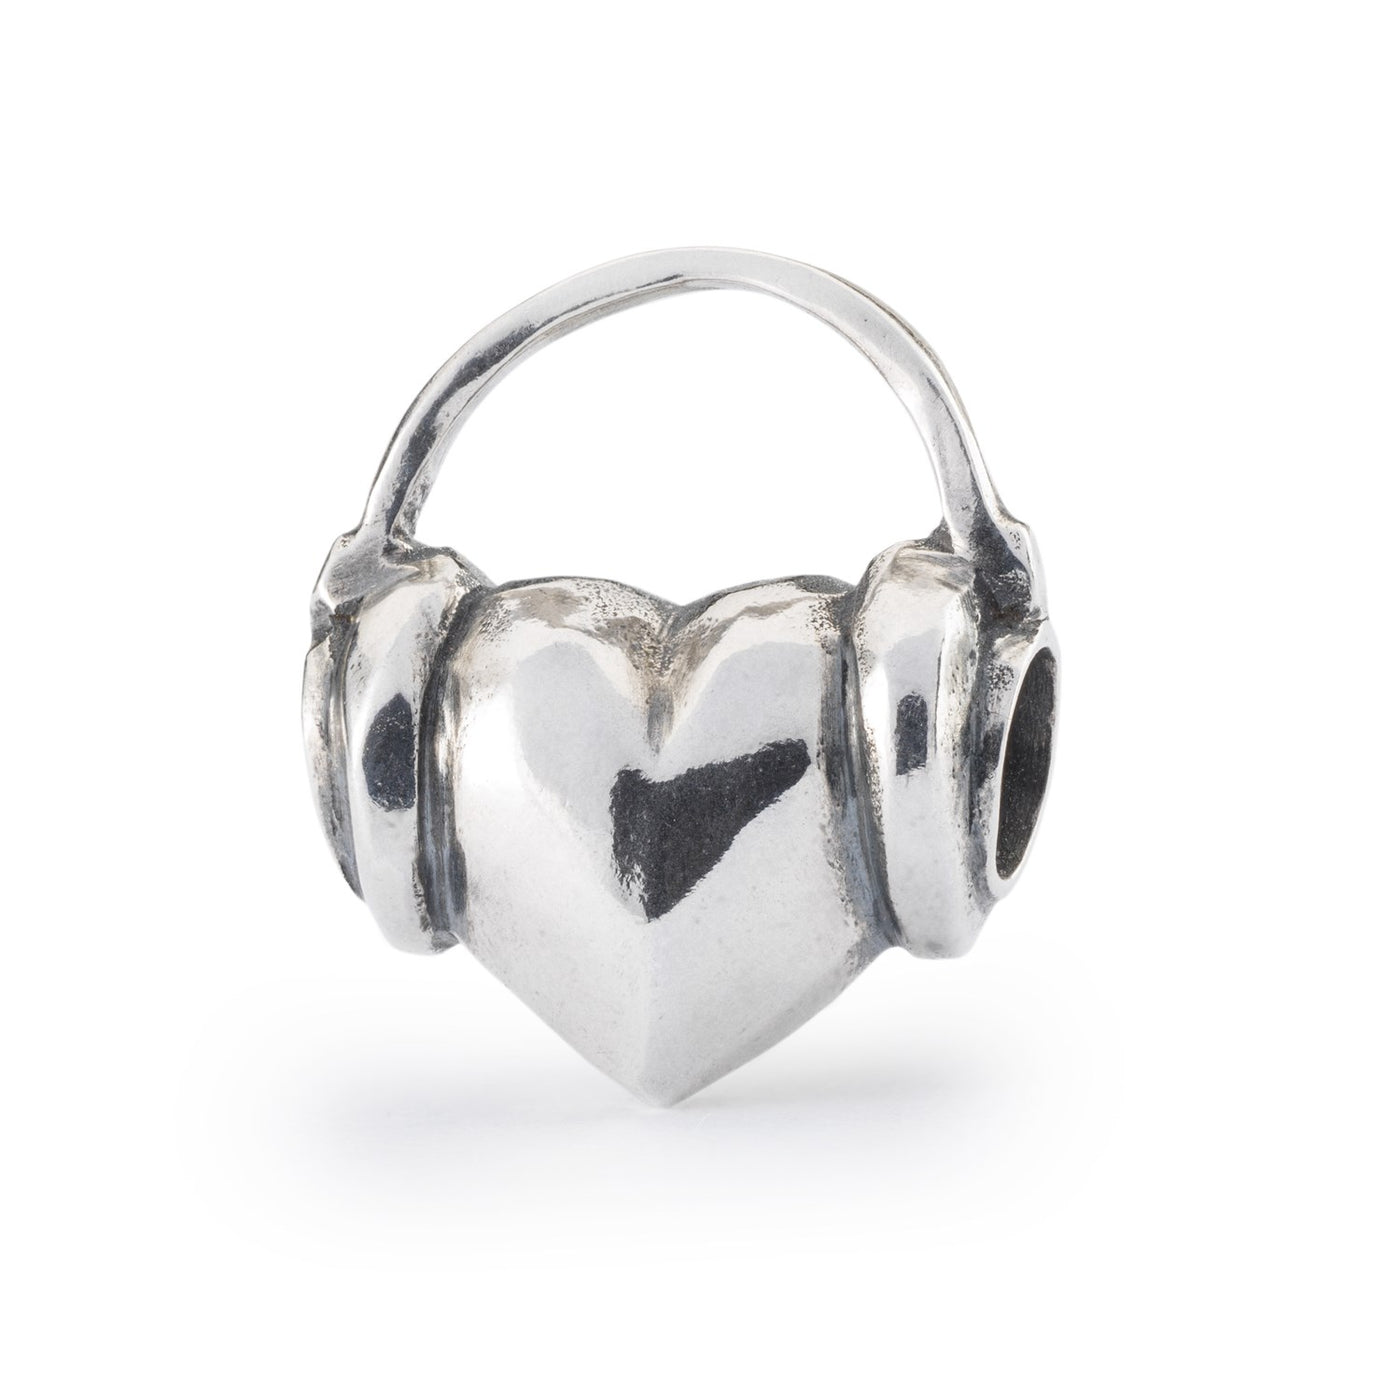 Vores Melodi er en kugle i sterlingsølv med et design af et hjerte med høretelefoner på.